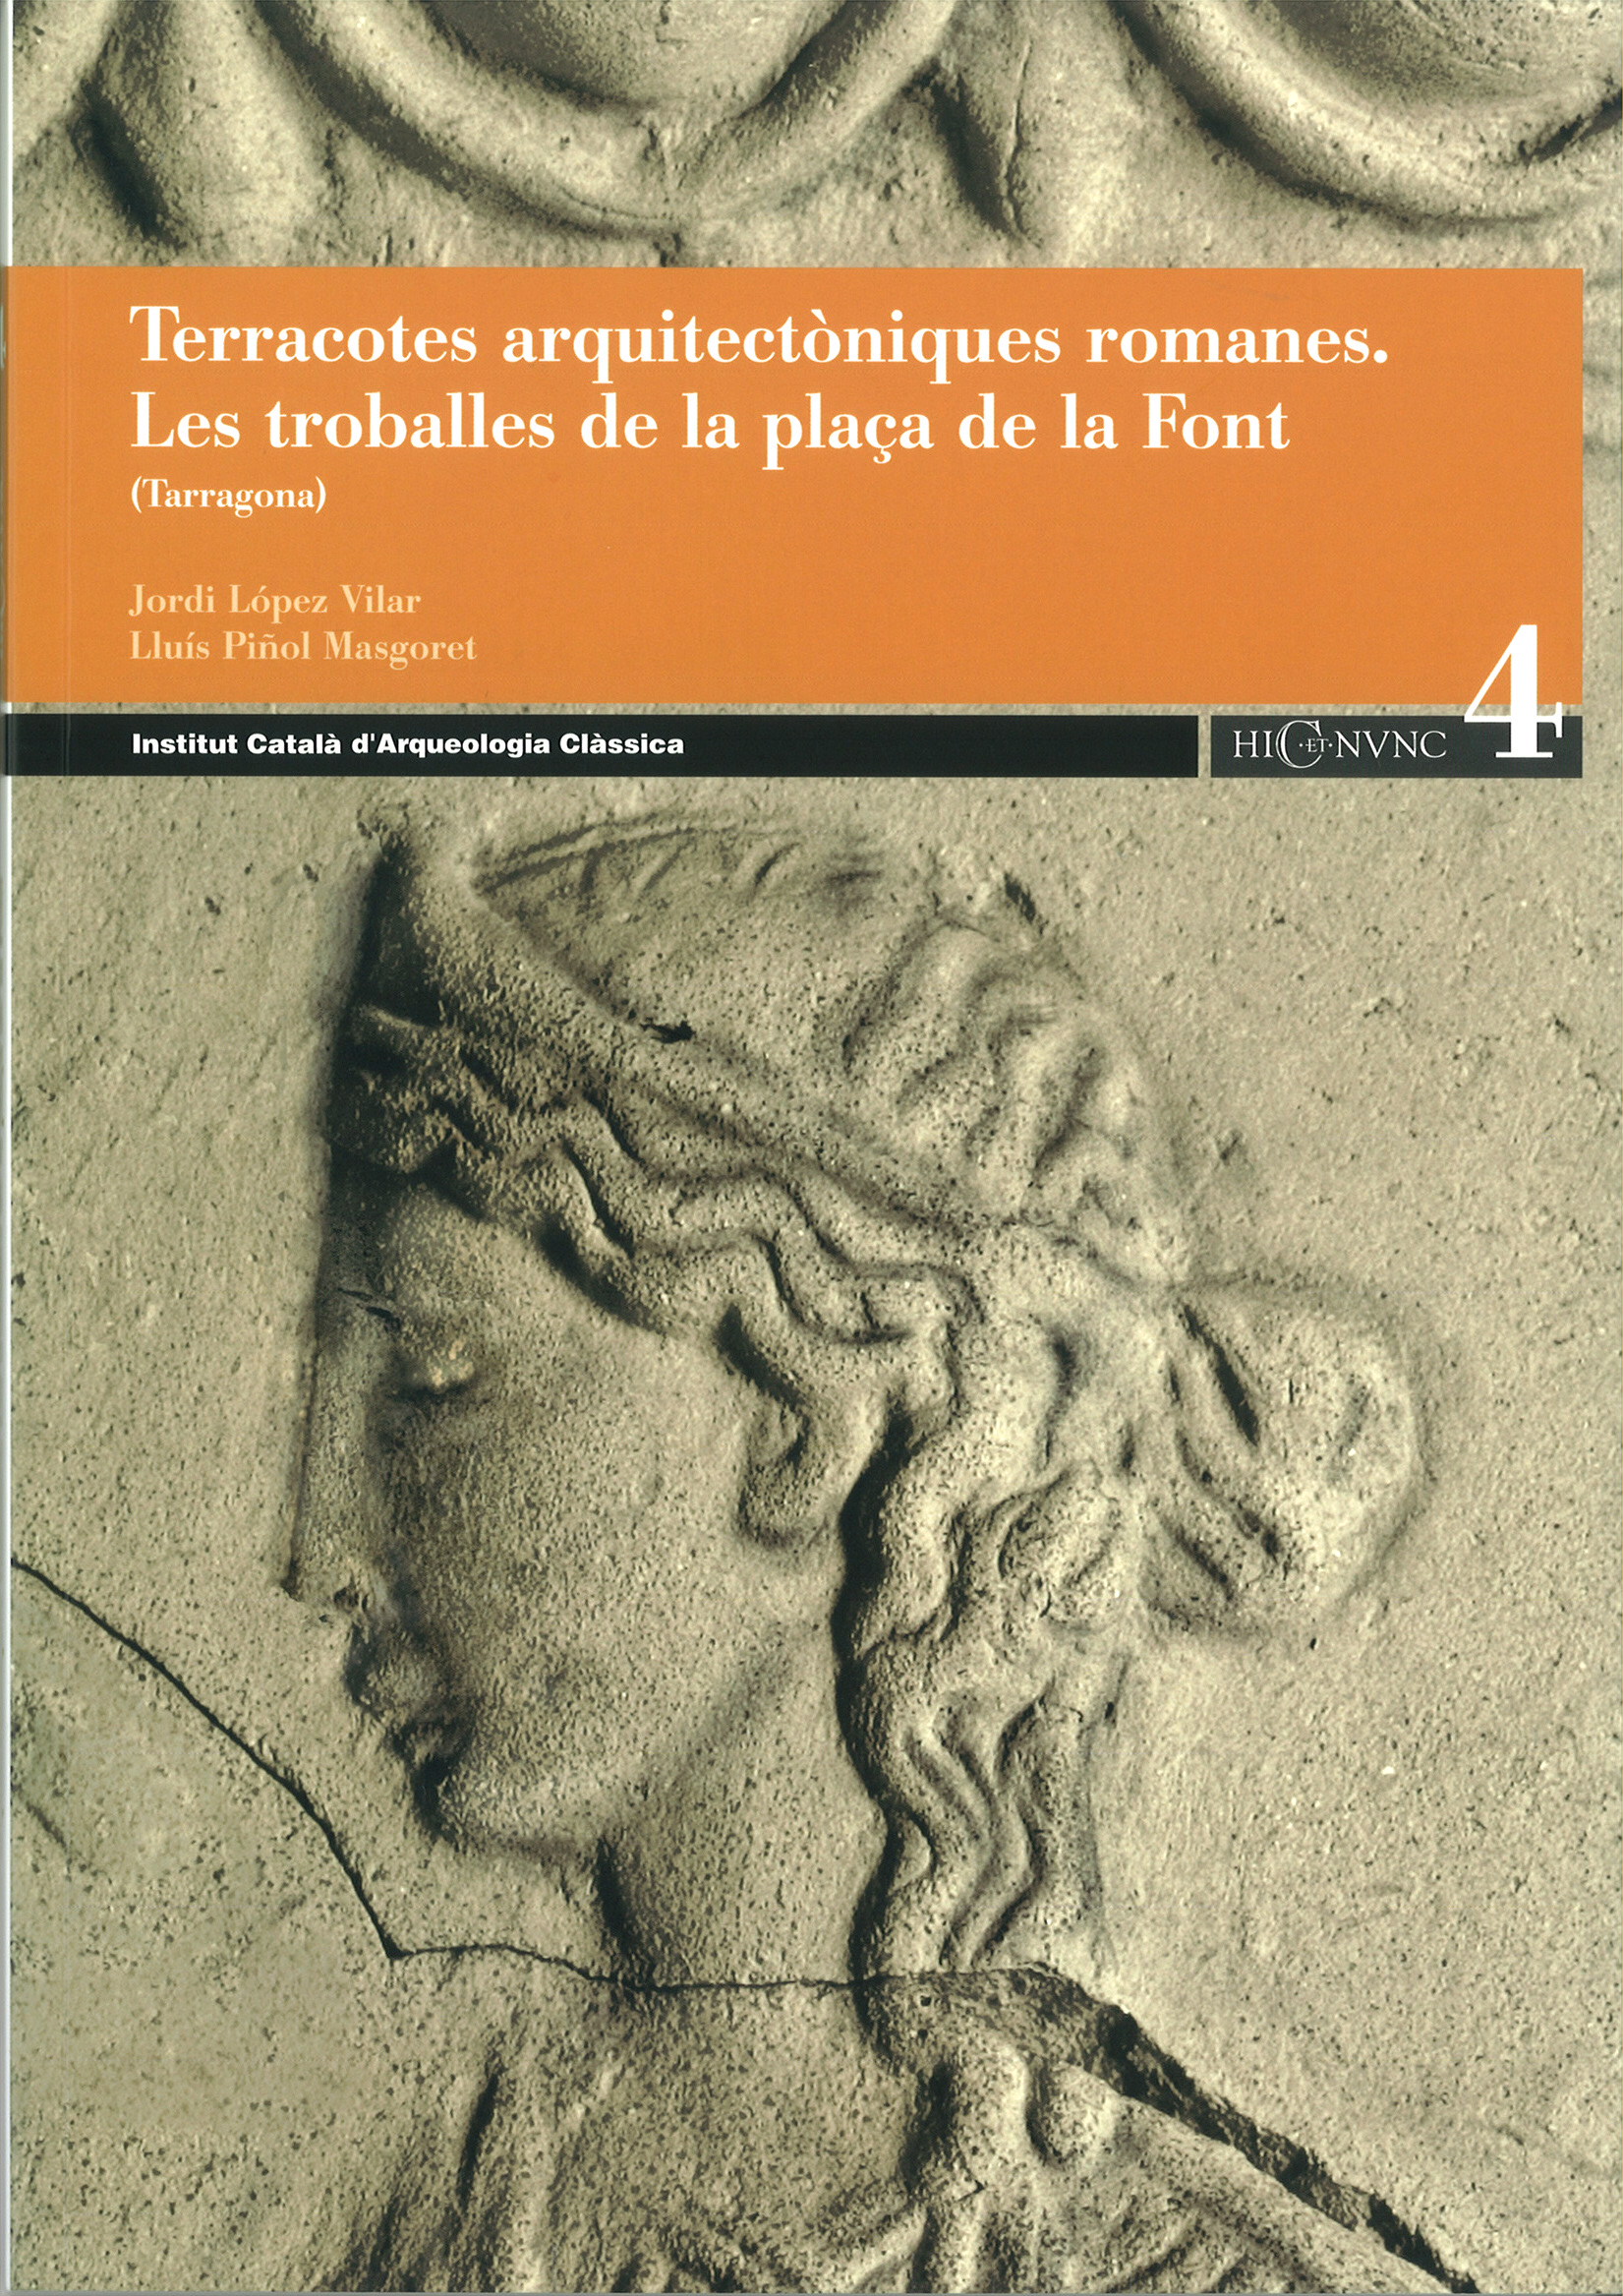 Terracotes arquitectòniques romanes. les troballes de la plaça de la Font (Tarragona, Tarragonès), 2008, 116 p.